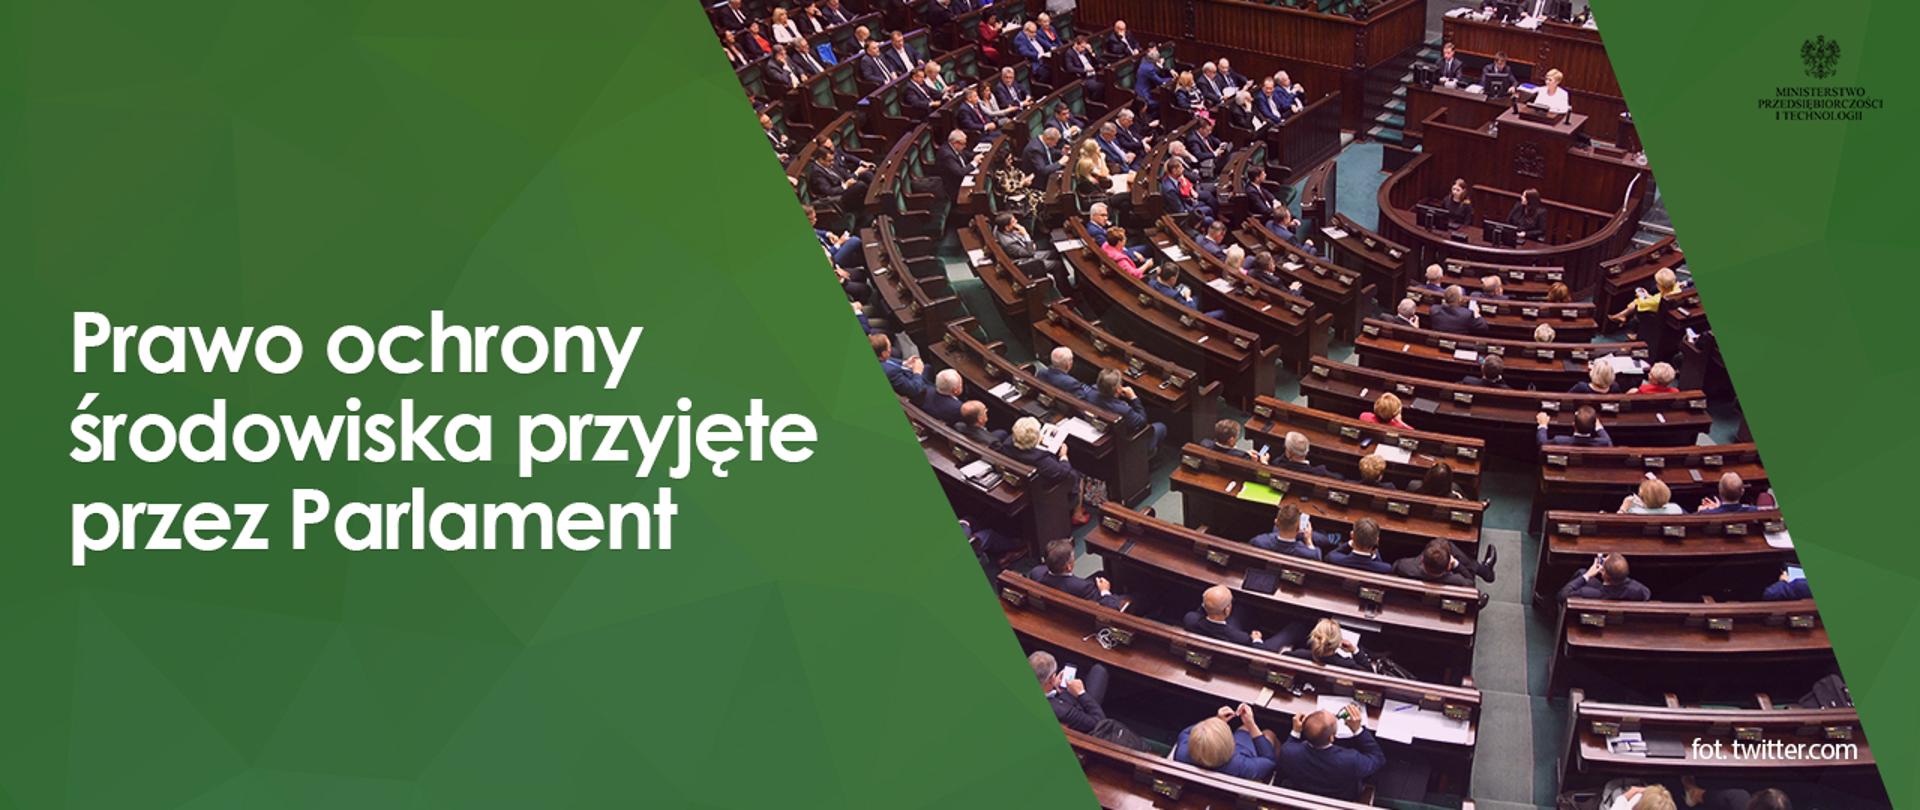 Grafika - na zielonym tle napis "Prawo ochrony środowiska przyjęte przez Parlament", obok zdjęcie sali sejmowej.